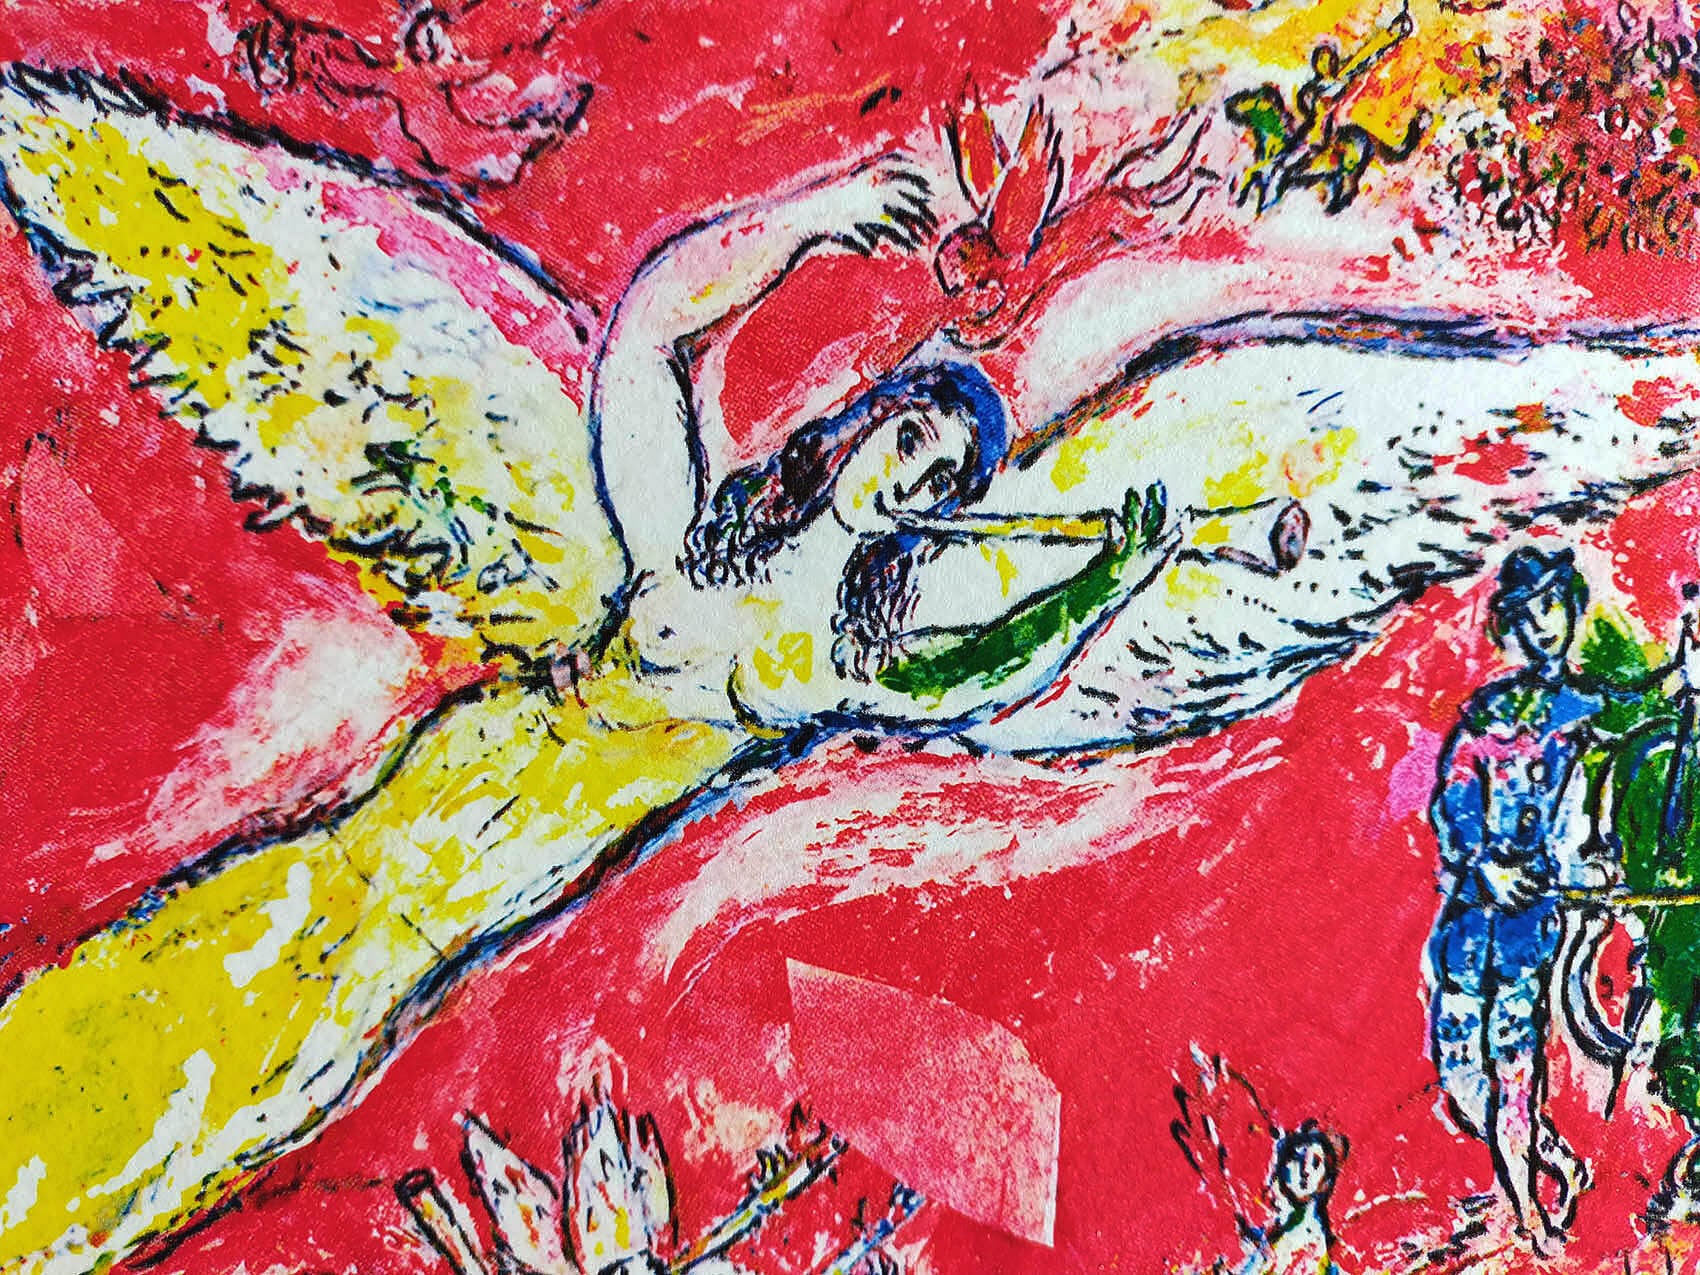 マルク・シャガール絵画「音楽の勝利」作品証明書・展示用フック・限定375部エディション付複製画ジークレ